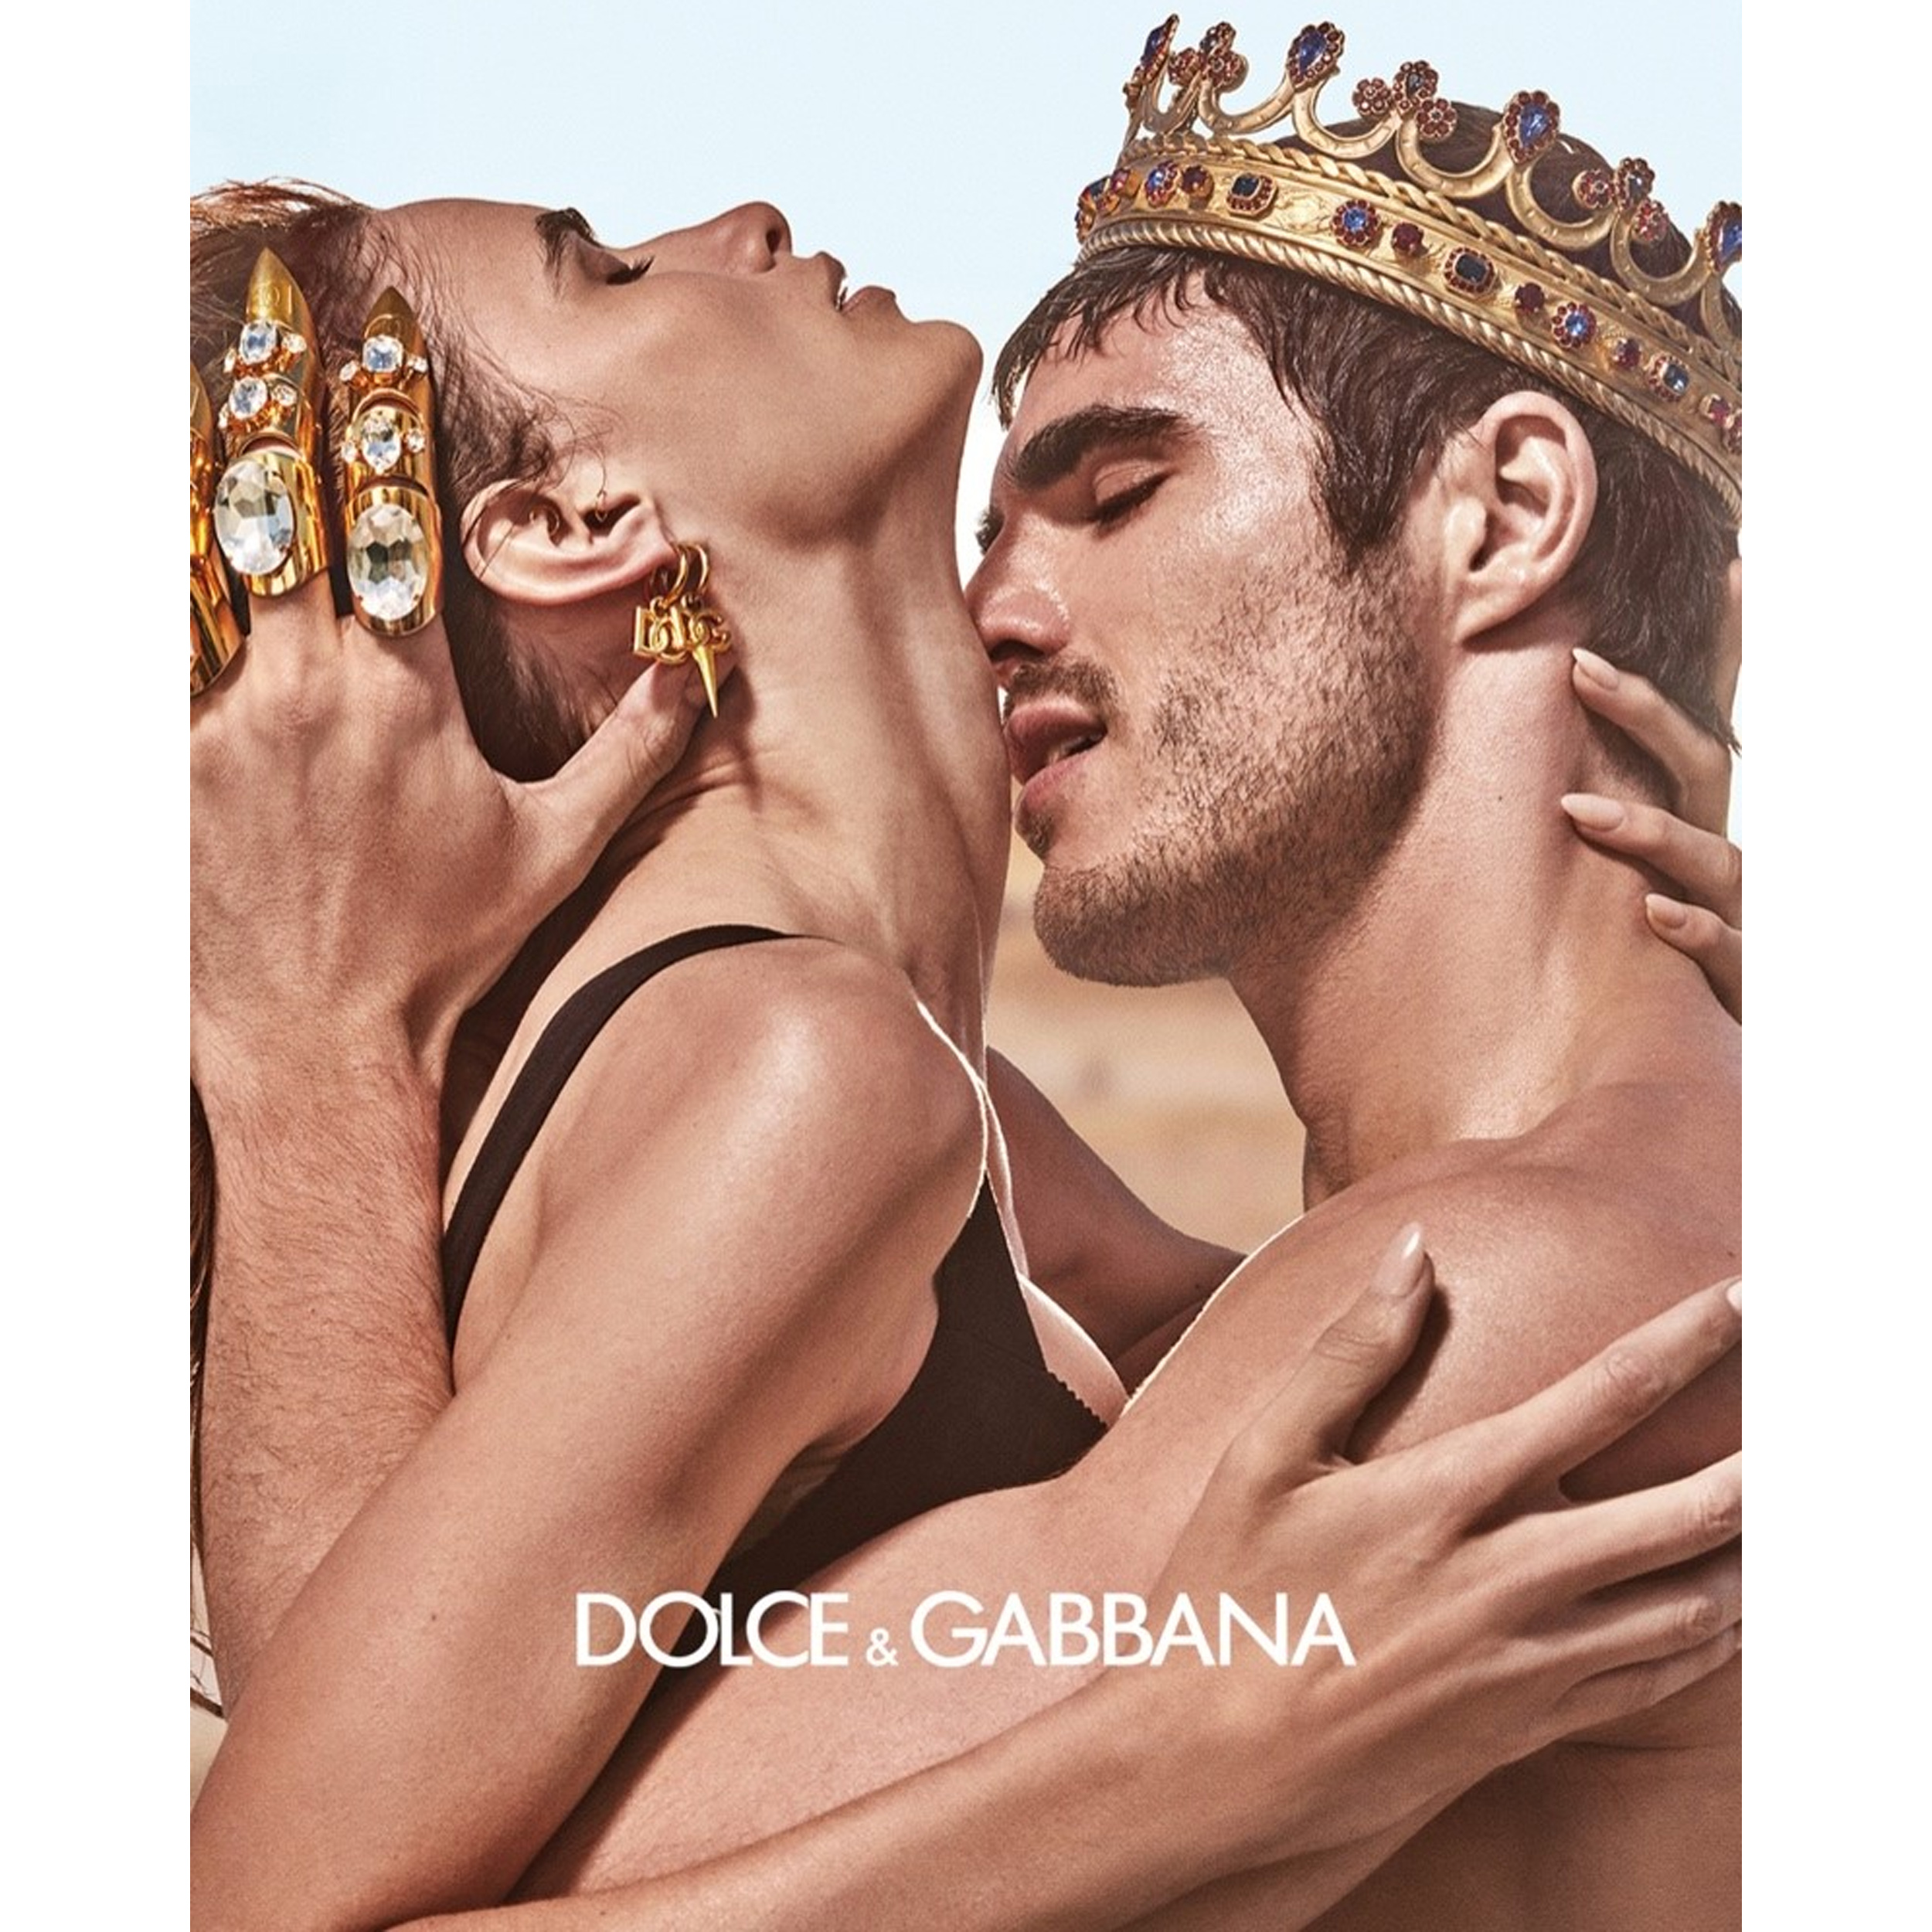 K by Dolce & Gabbana Eau de Parfum Dolce&Gabbana (Replica Con Fragancia Importada)- Hombre